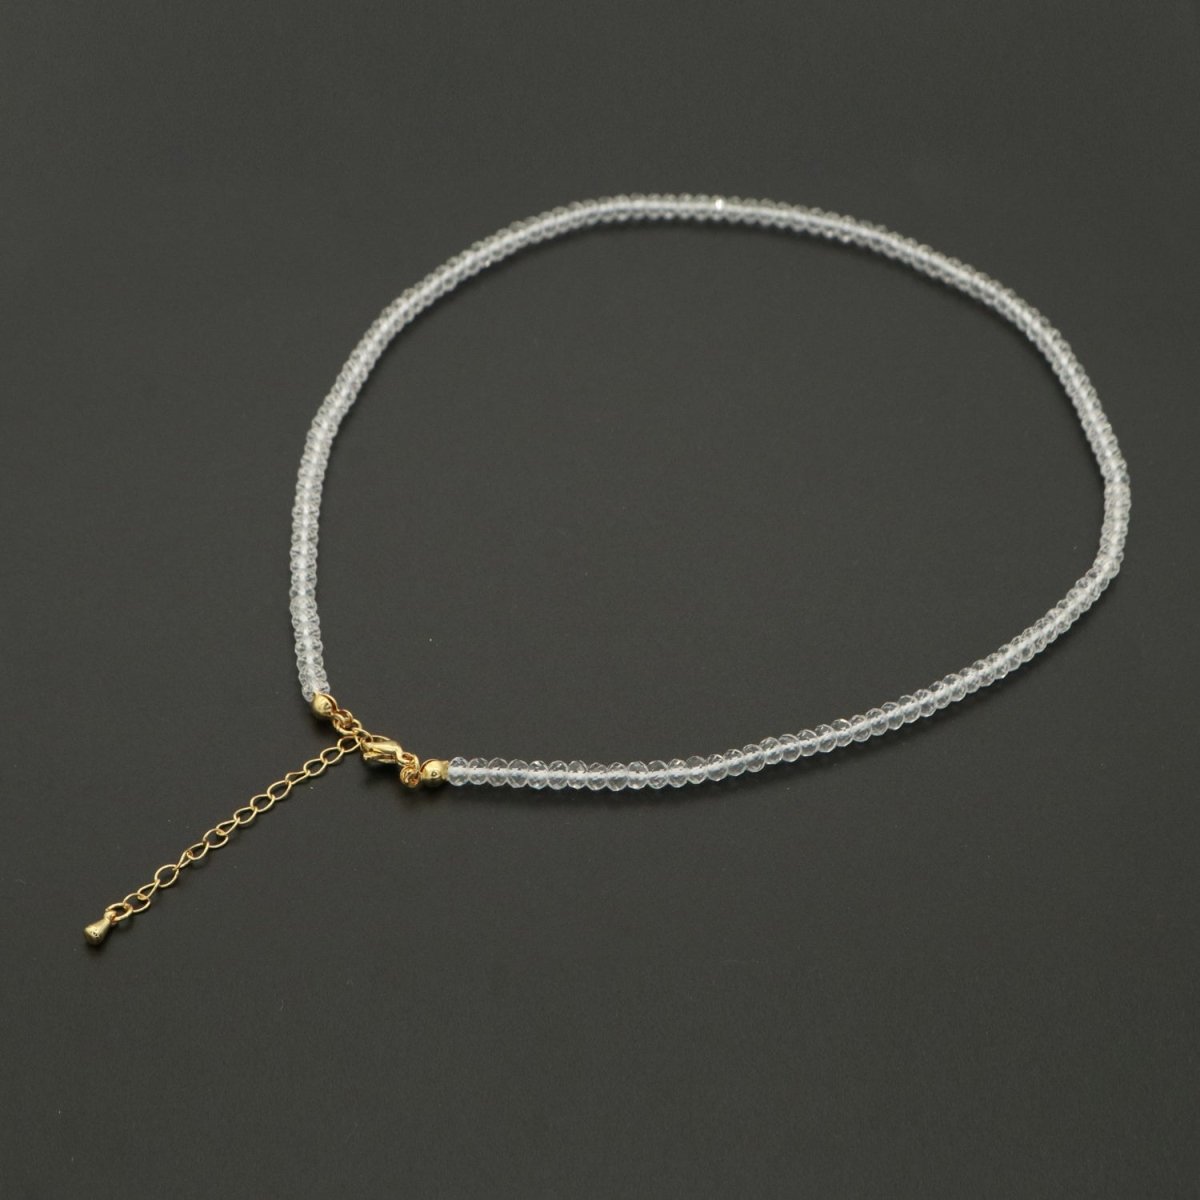 Dainty Clear Quartz Necklace gemstone minimalist Jewelry beaded Healing Stone Necklace | WA-262 Clearance Pricing - DLUXCA